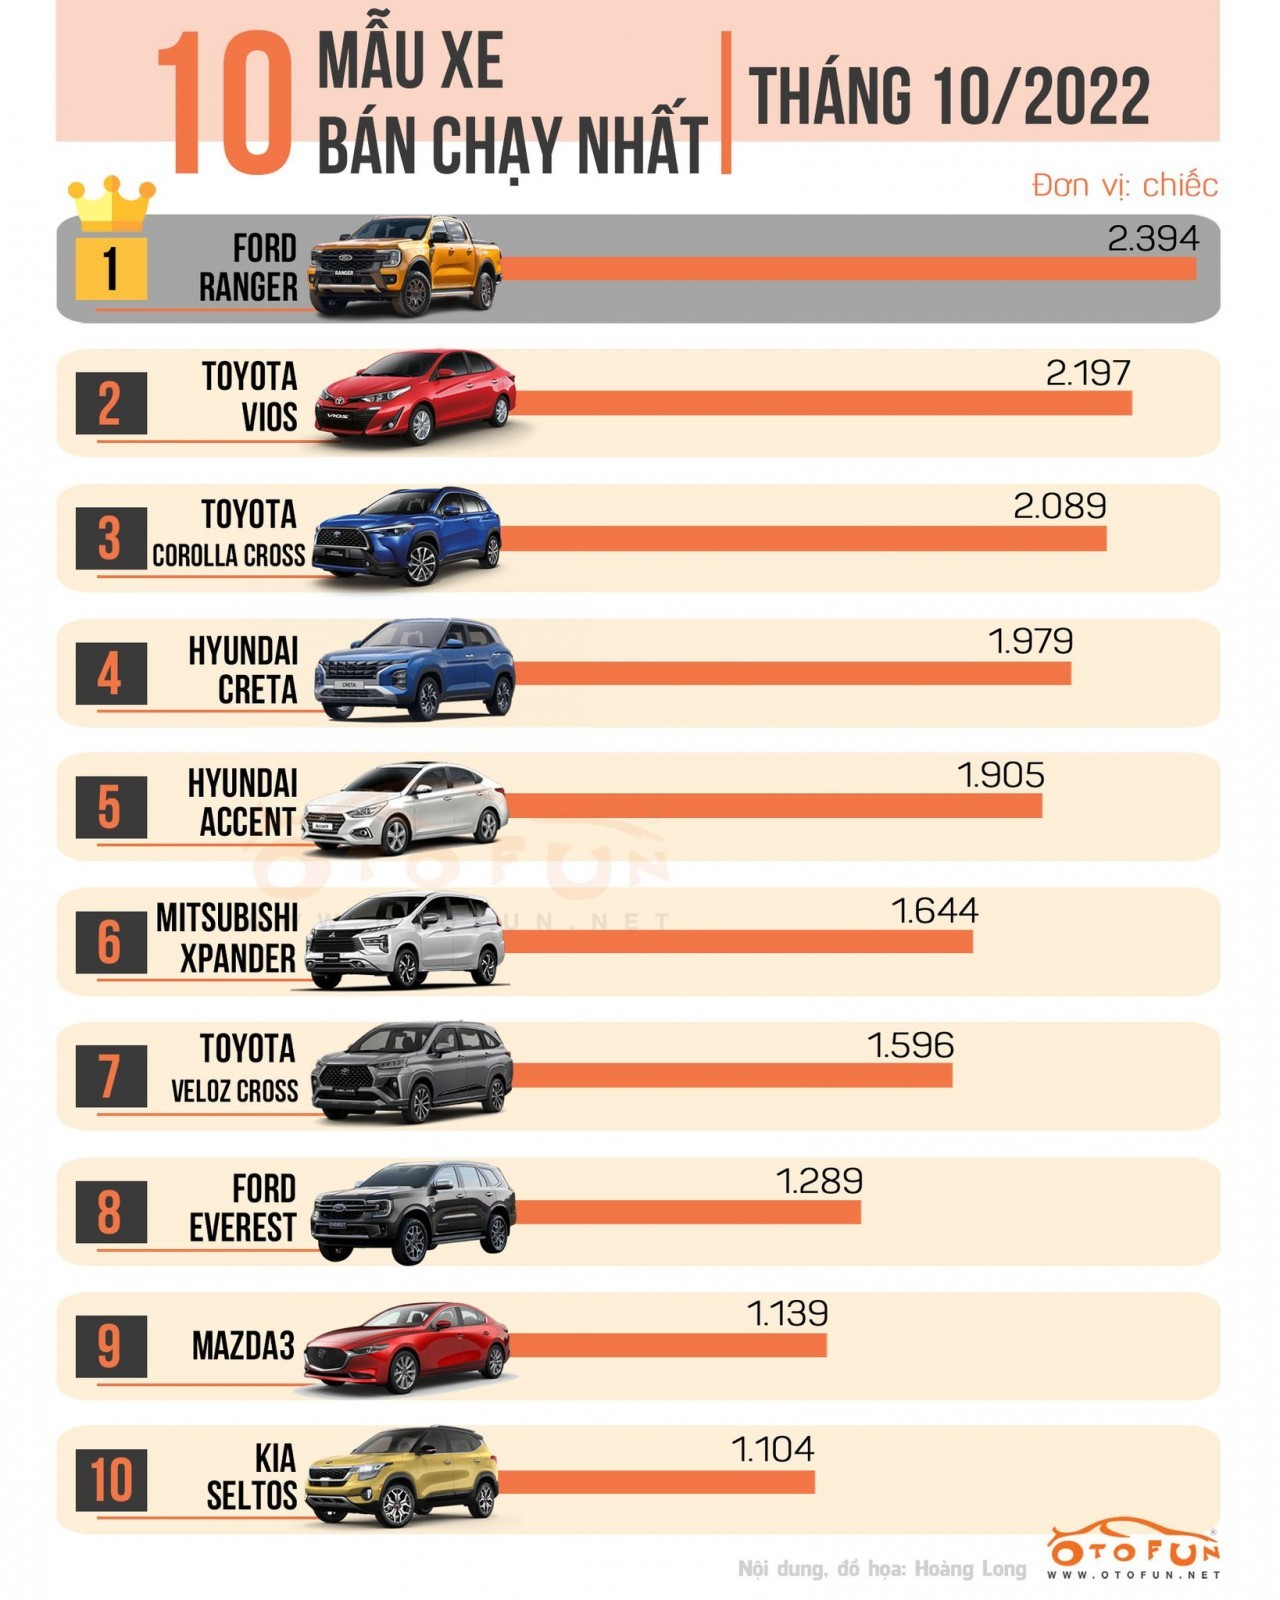 Top 10 xe ô tô bán chạy tháng 10/2022: